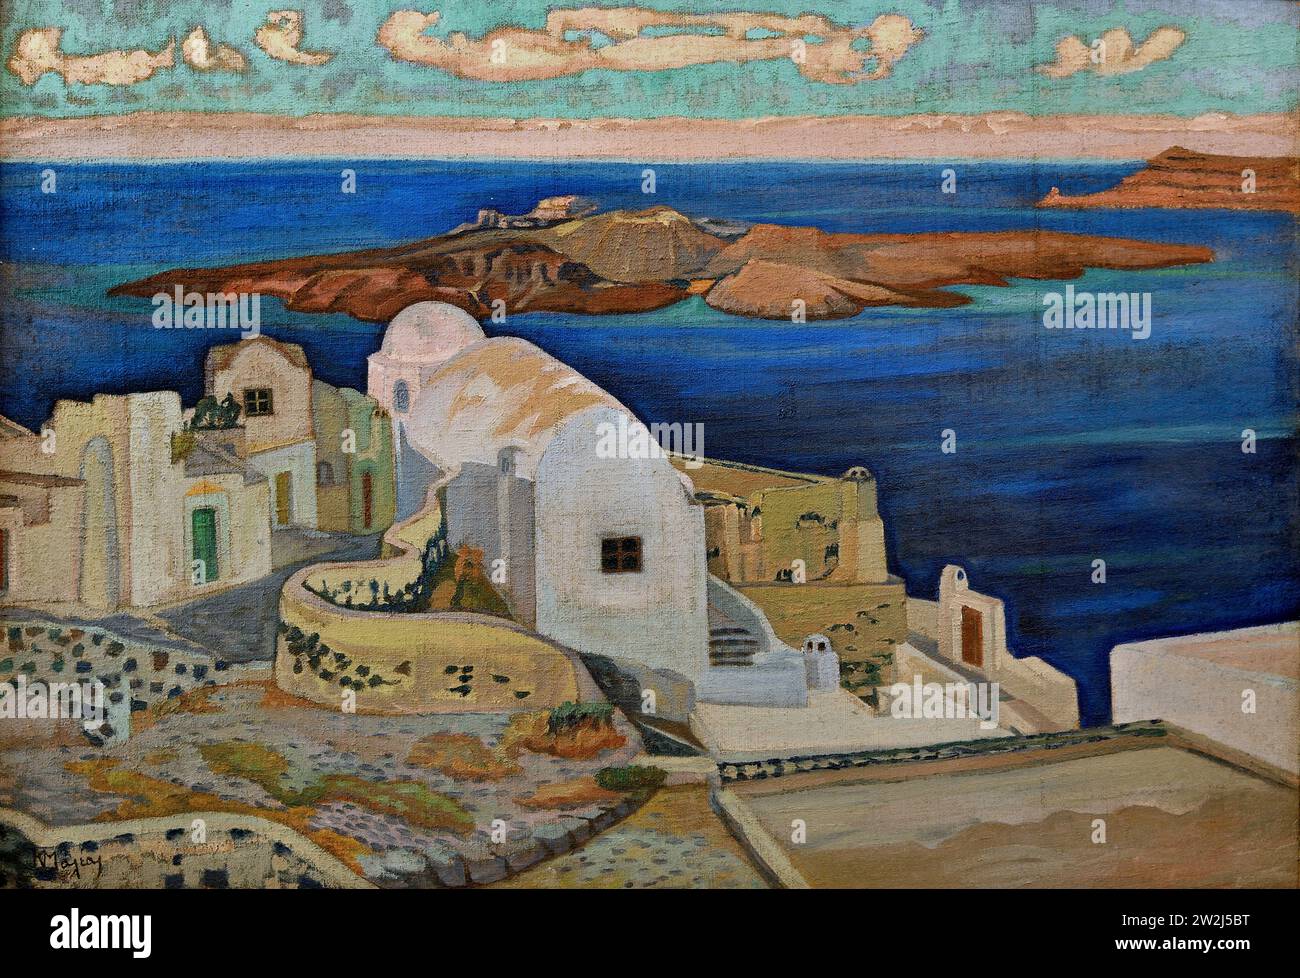 Maleas Konstantinos (1879 - 1928) Santorini, Pittura XIX-XX secolo, Galleria Nazionale, Atene, Grecia. Foto Stock